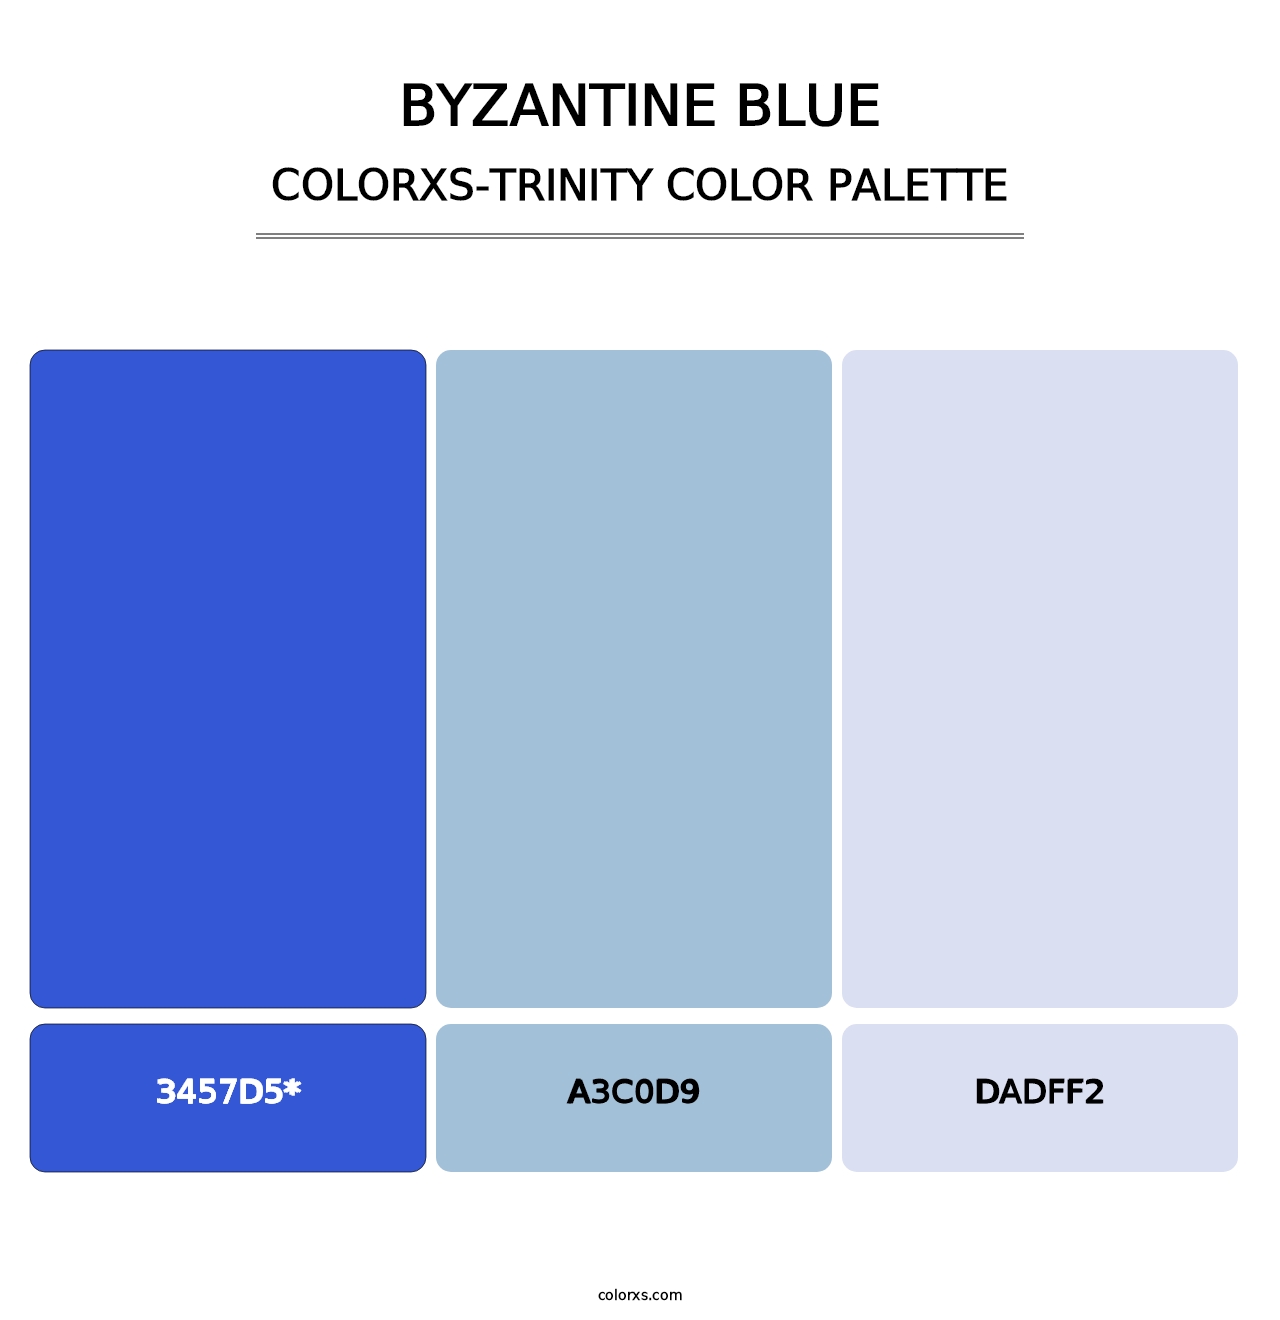 Byzantine Blue - Colorxs Trinity Palette